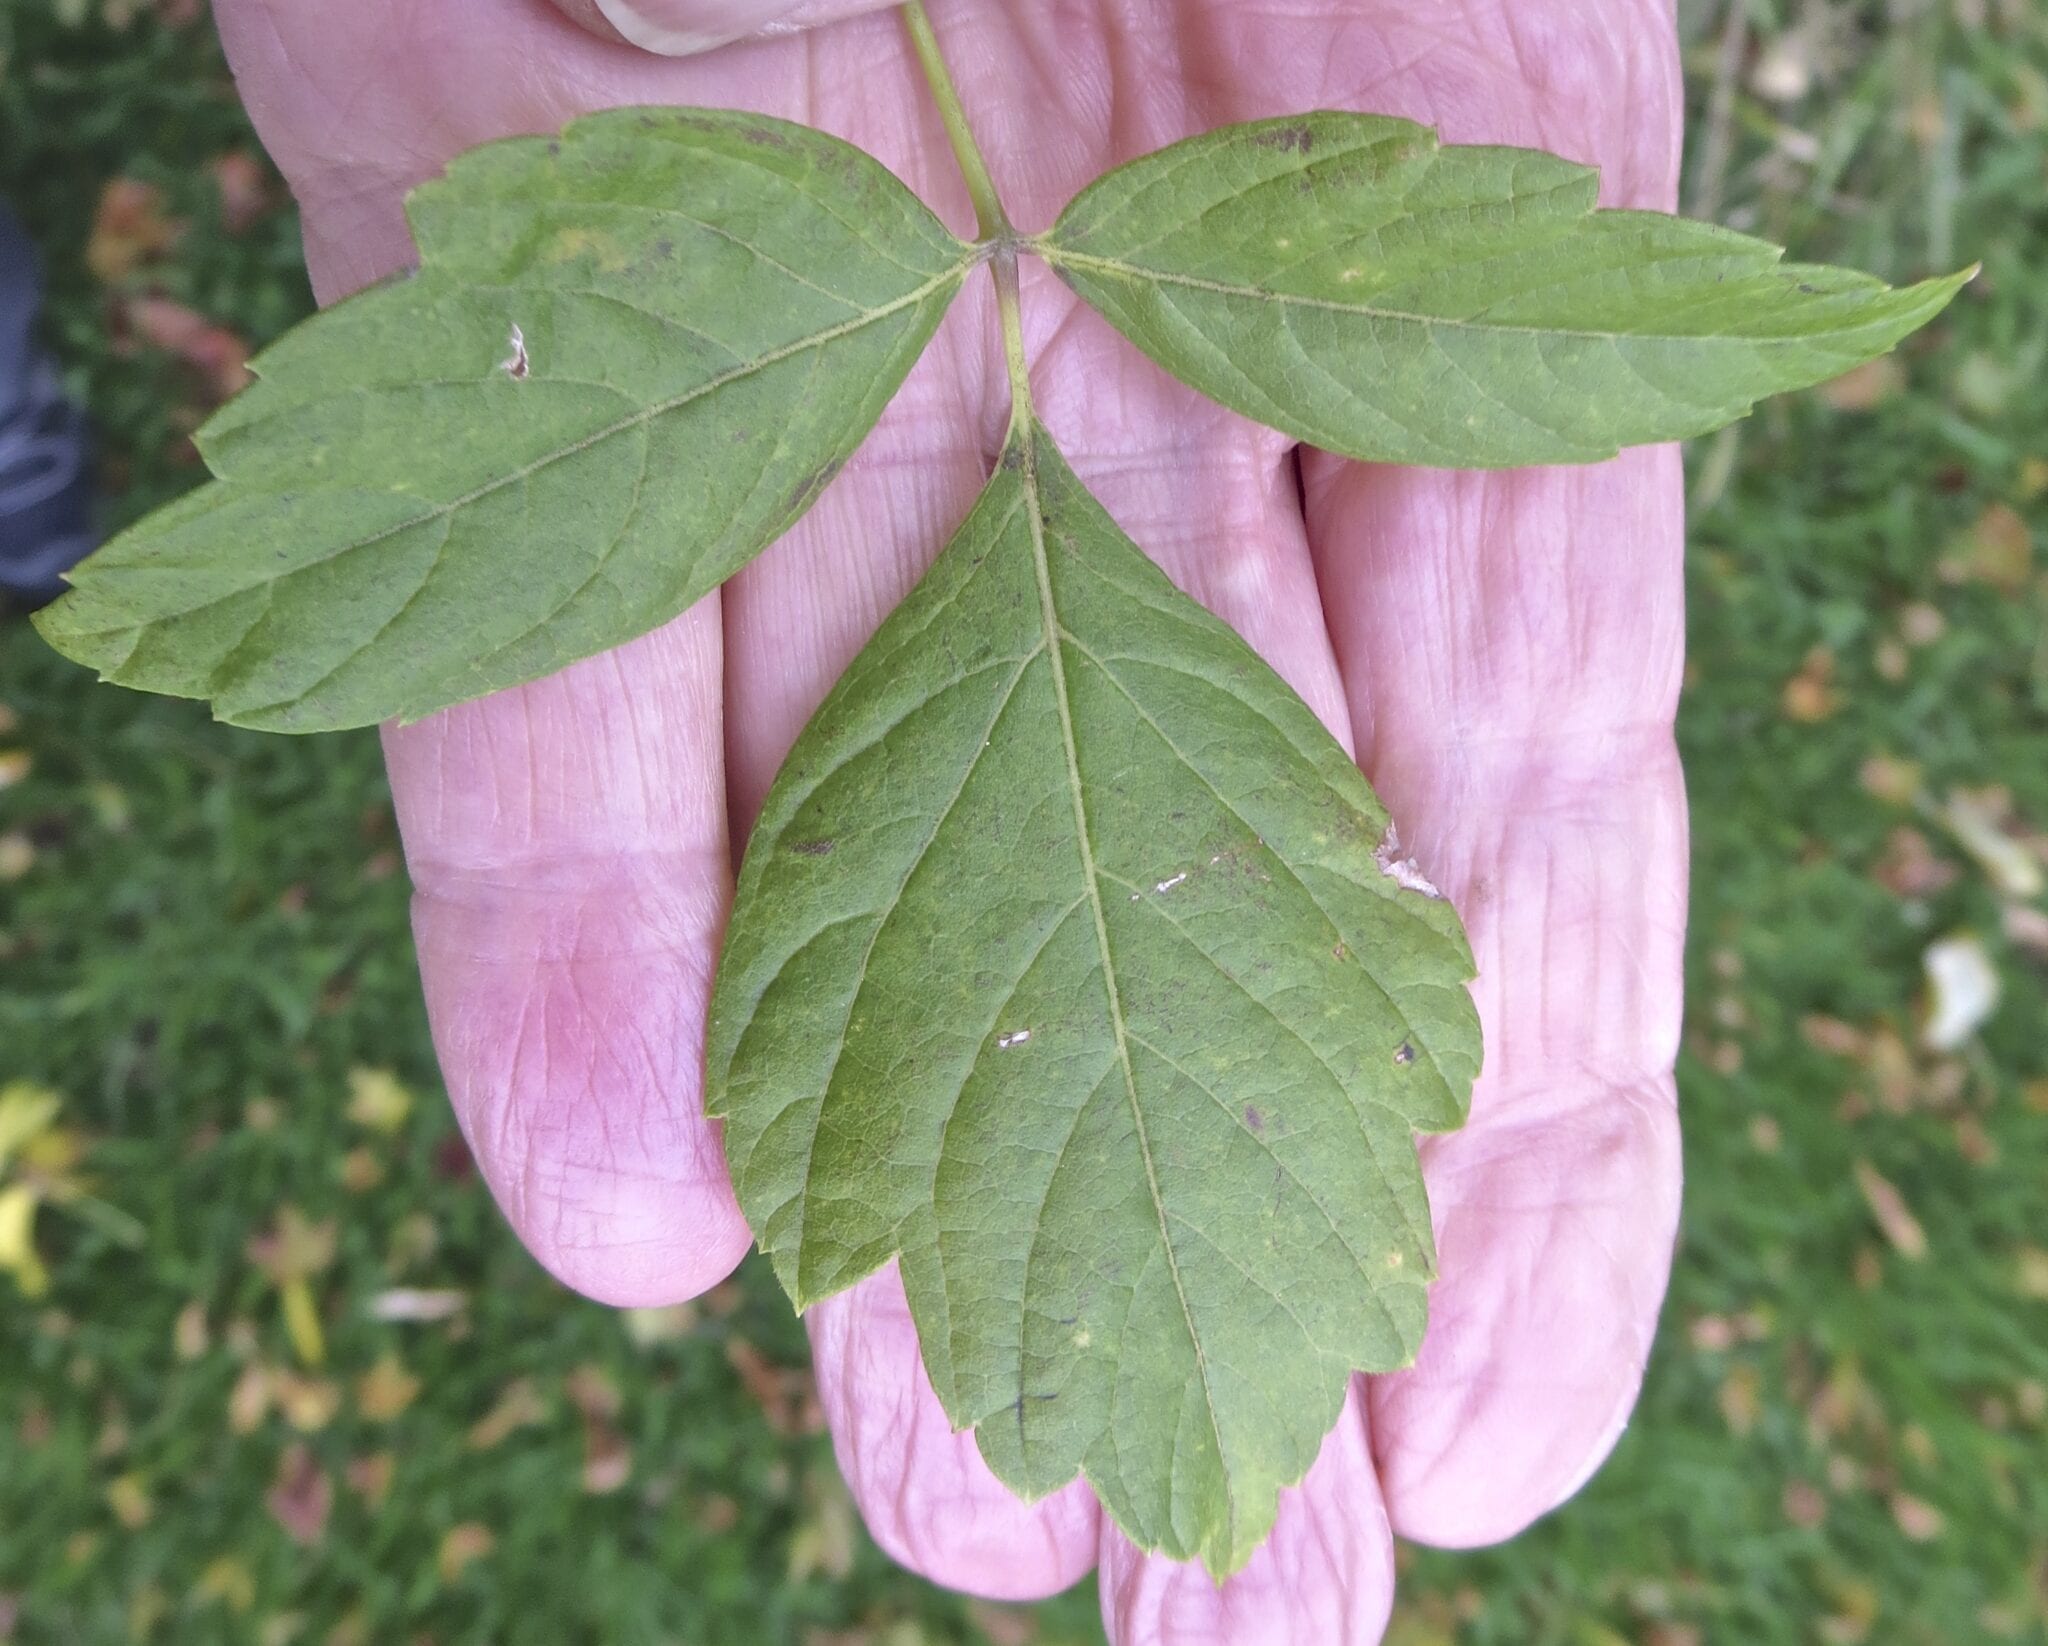 Box Elder leaves